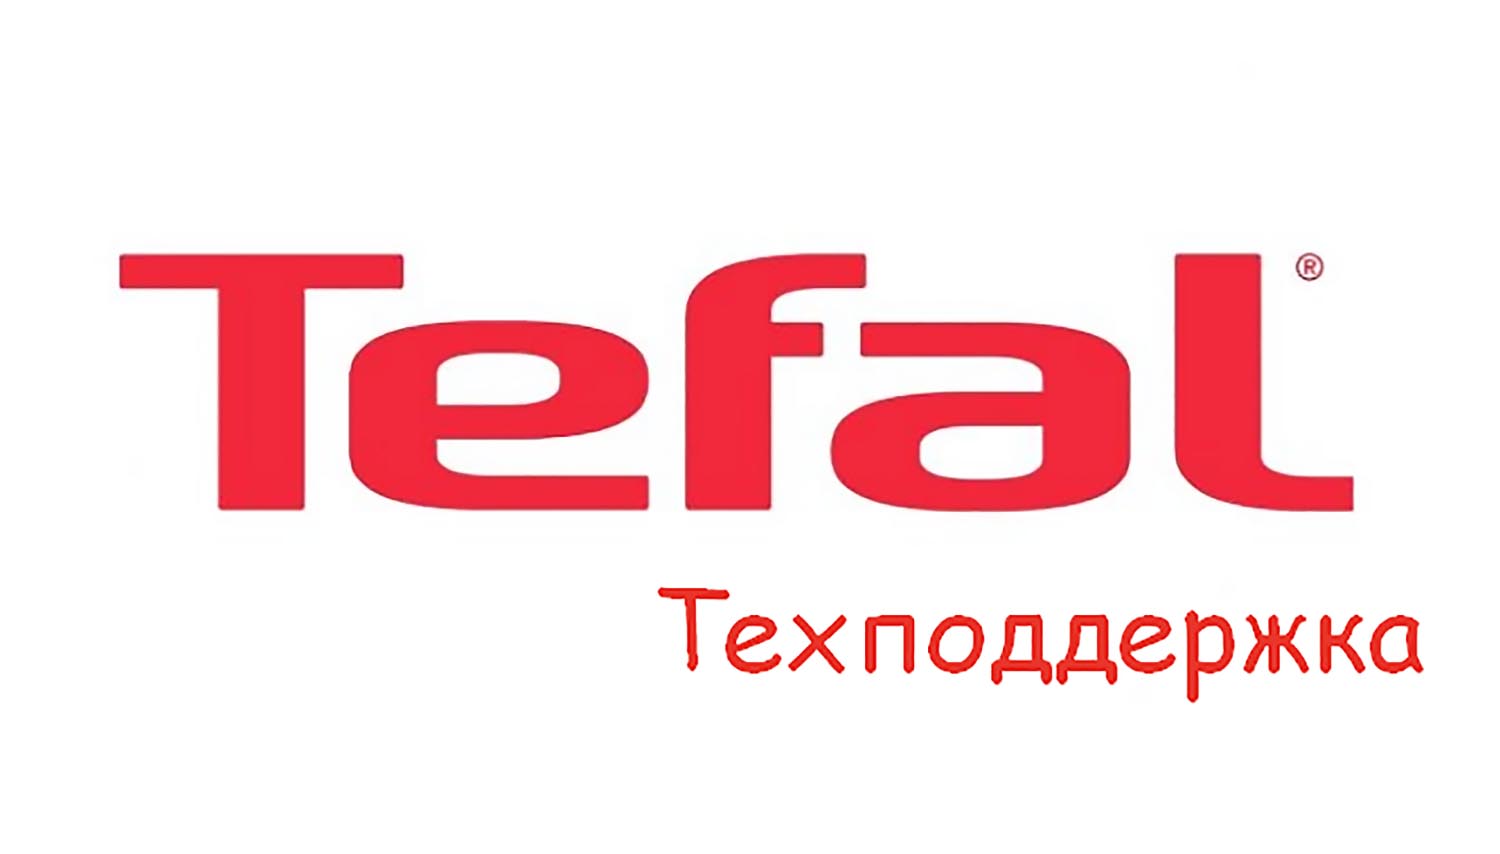 Техническая поддержка Tefal, горячая линия, служба поддержки